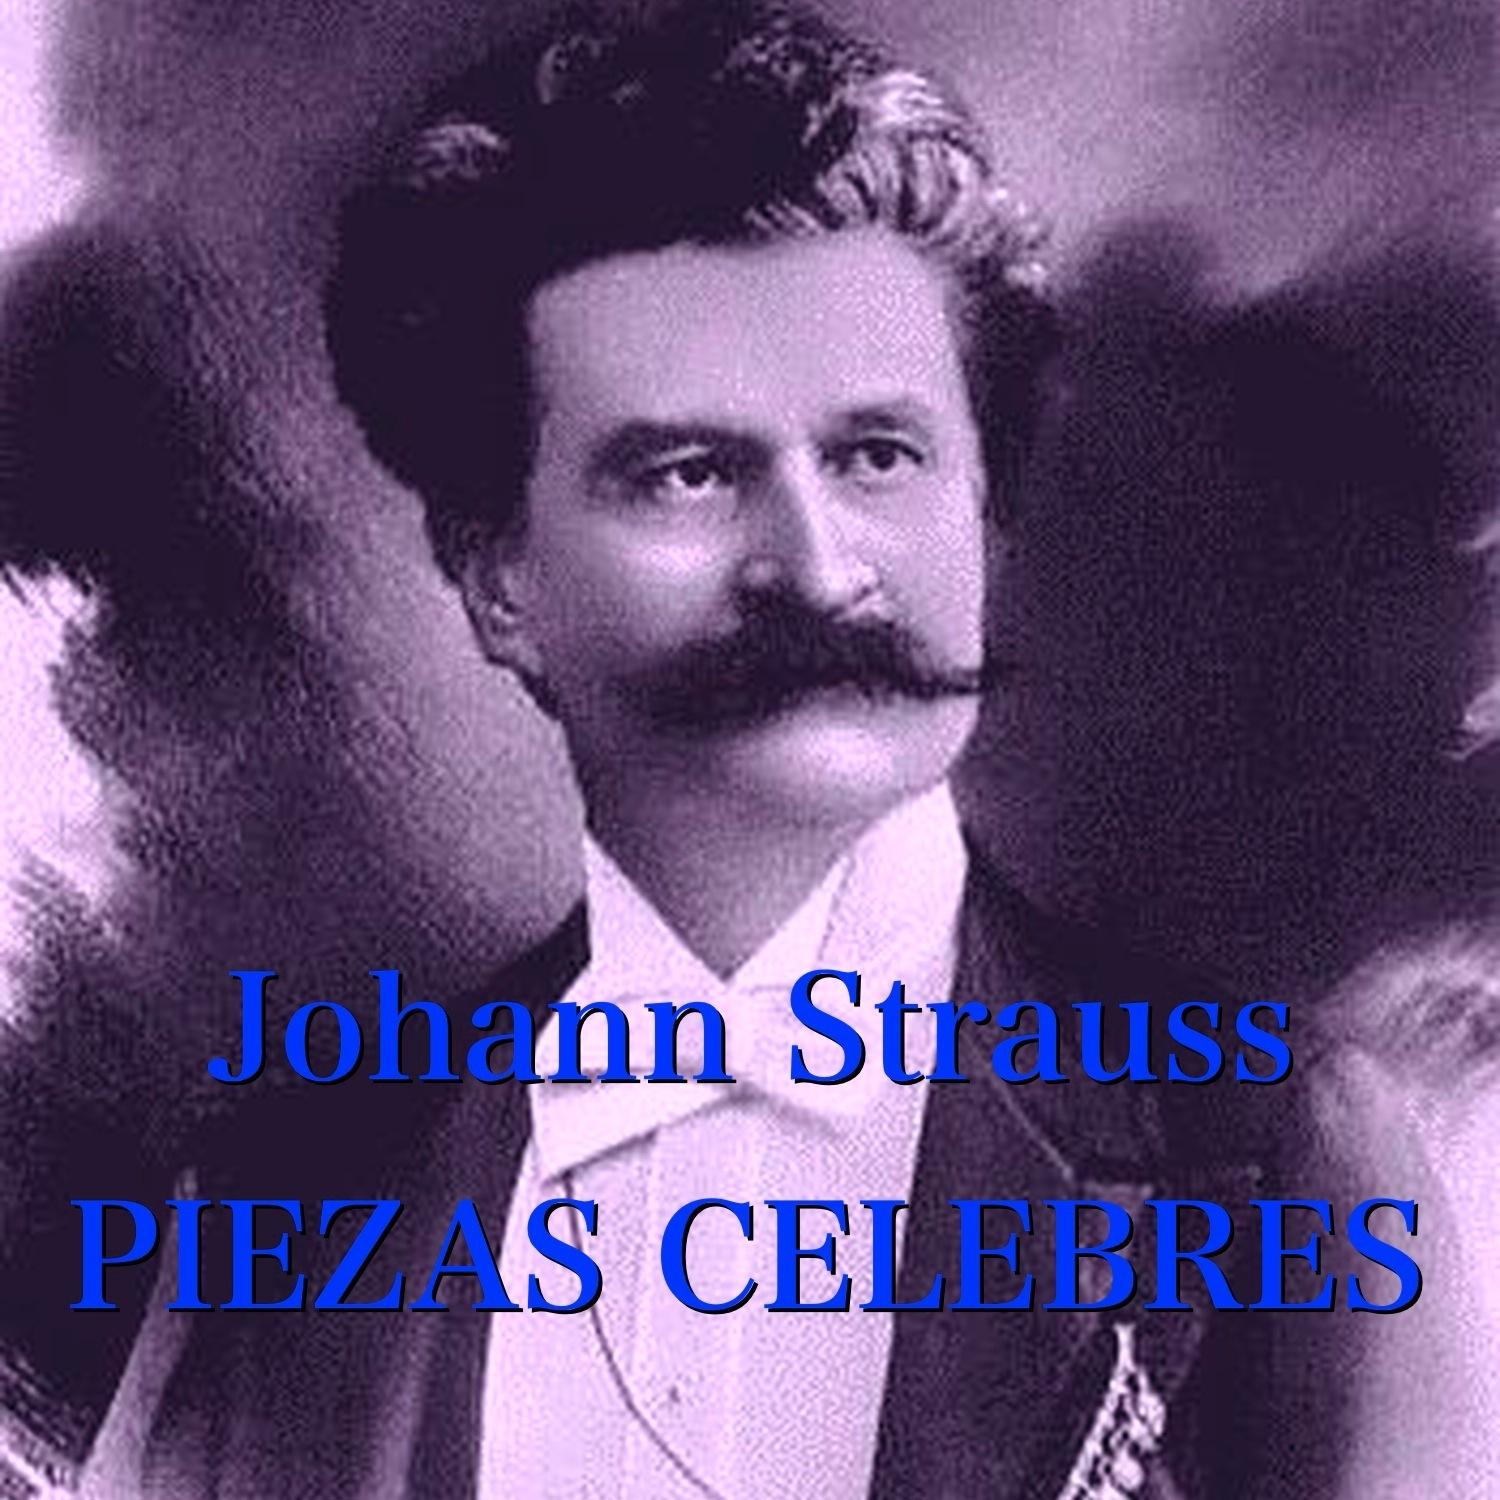 Johann Strauss: Piezas celebres